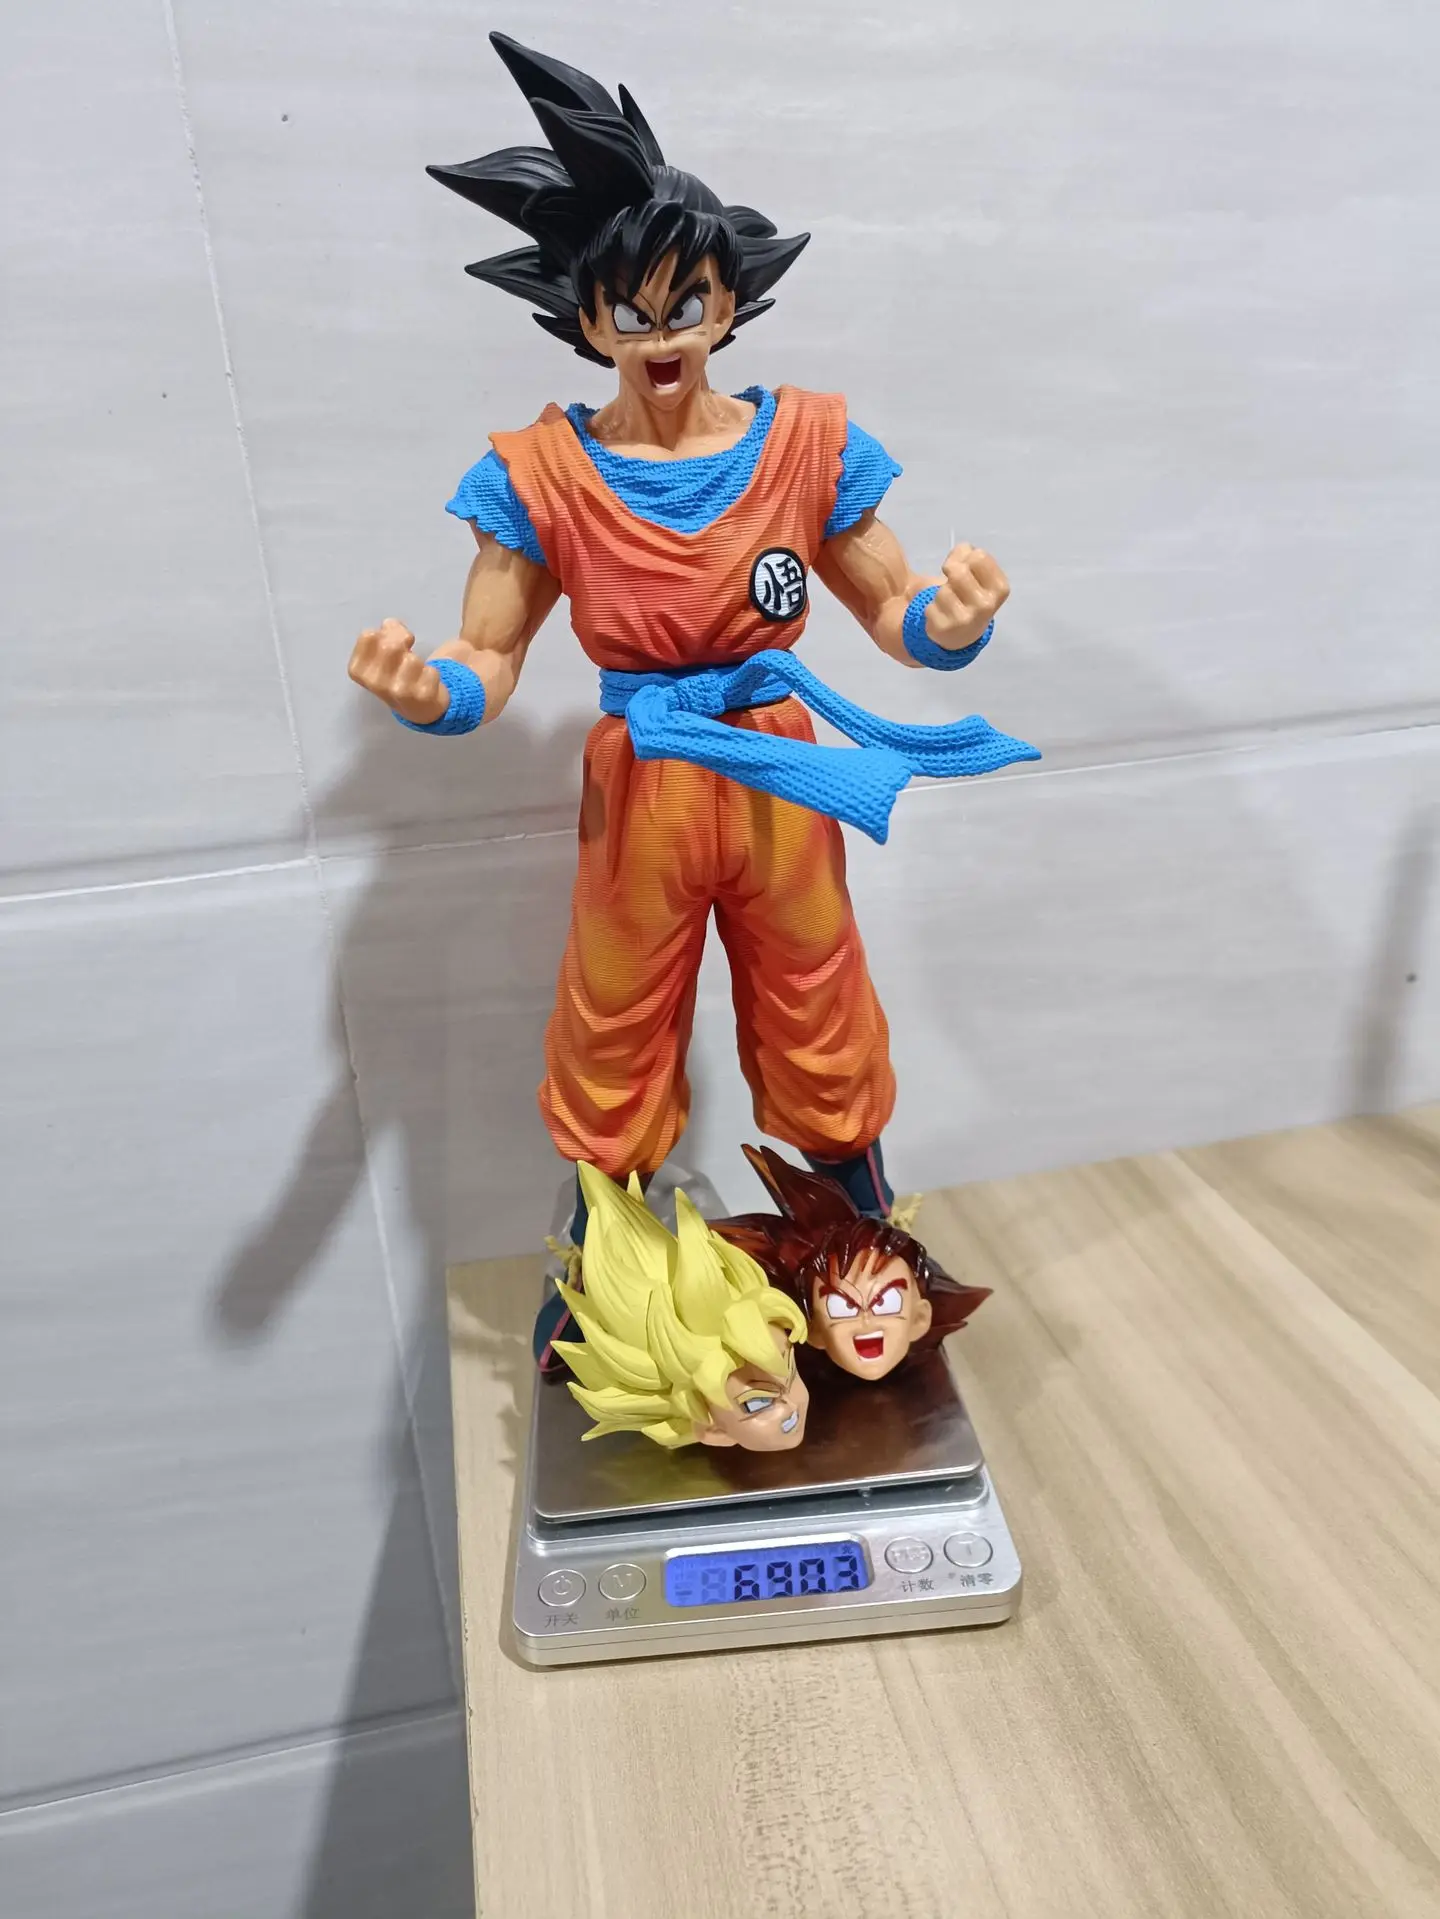 28 cm Bandai Dragon Ball Z Anime Figure GK Super Saiyan Son Goku Figure Action - $40.23